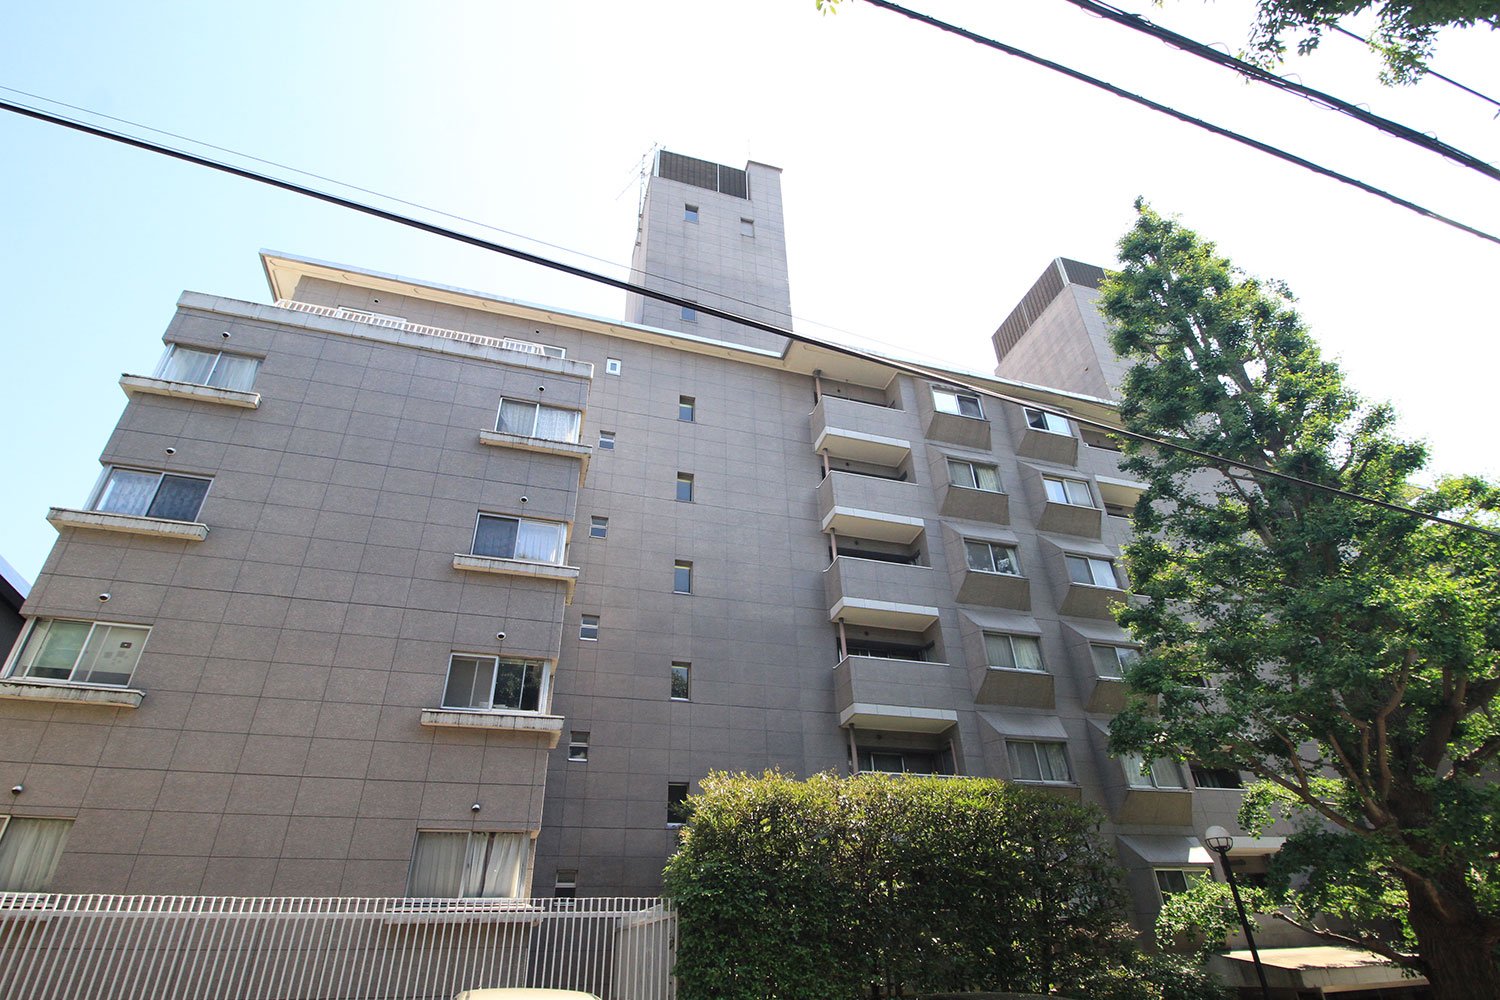 大イチョウが目印となる「赤坂アーバンライフ」。100平方メートル強の広いリビングルームと個室を備えた、ゆったりとした住戸が多い。